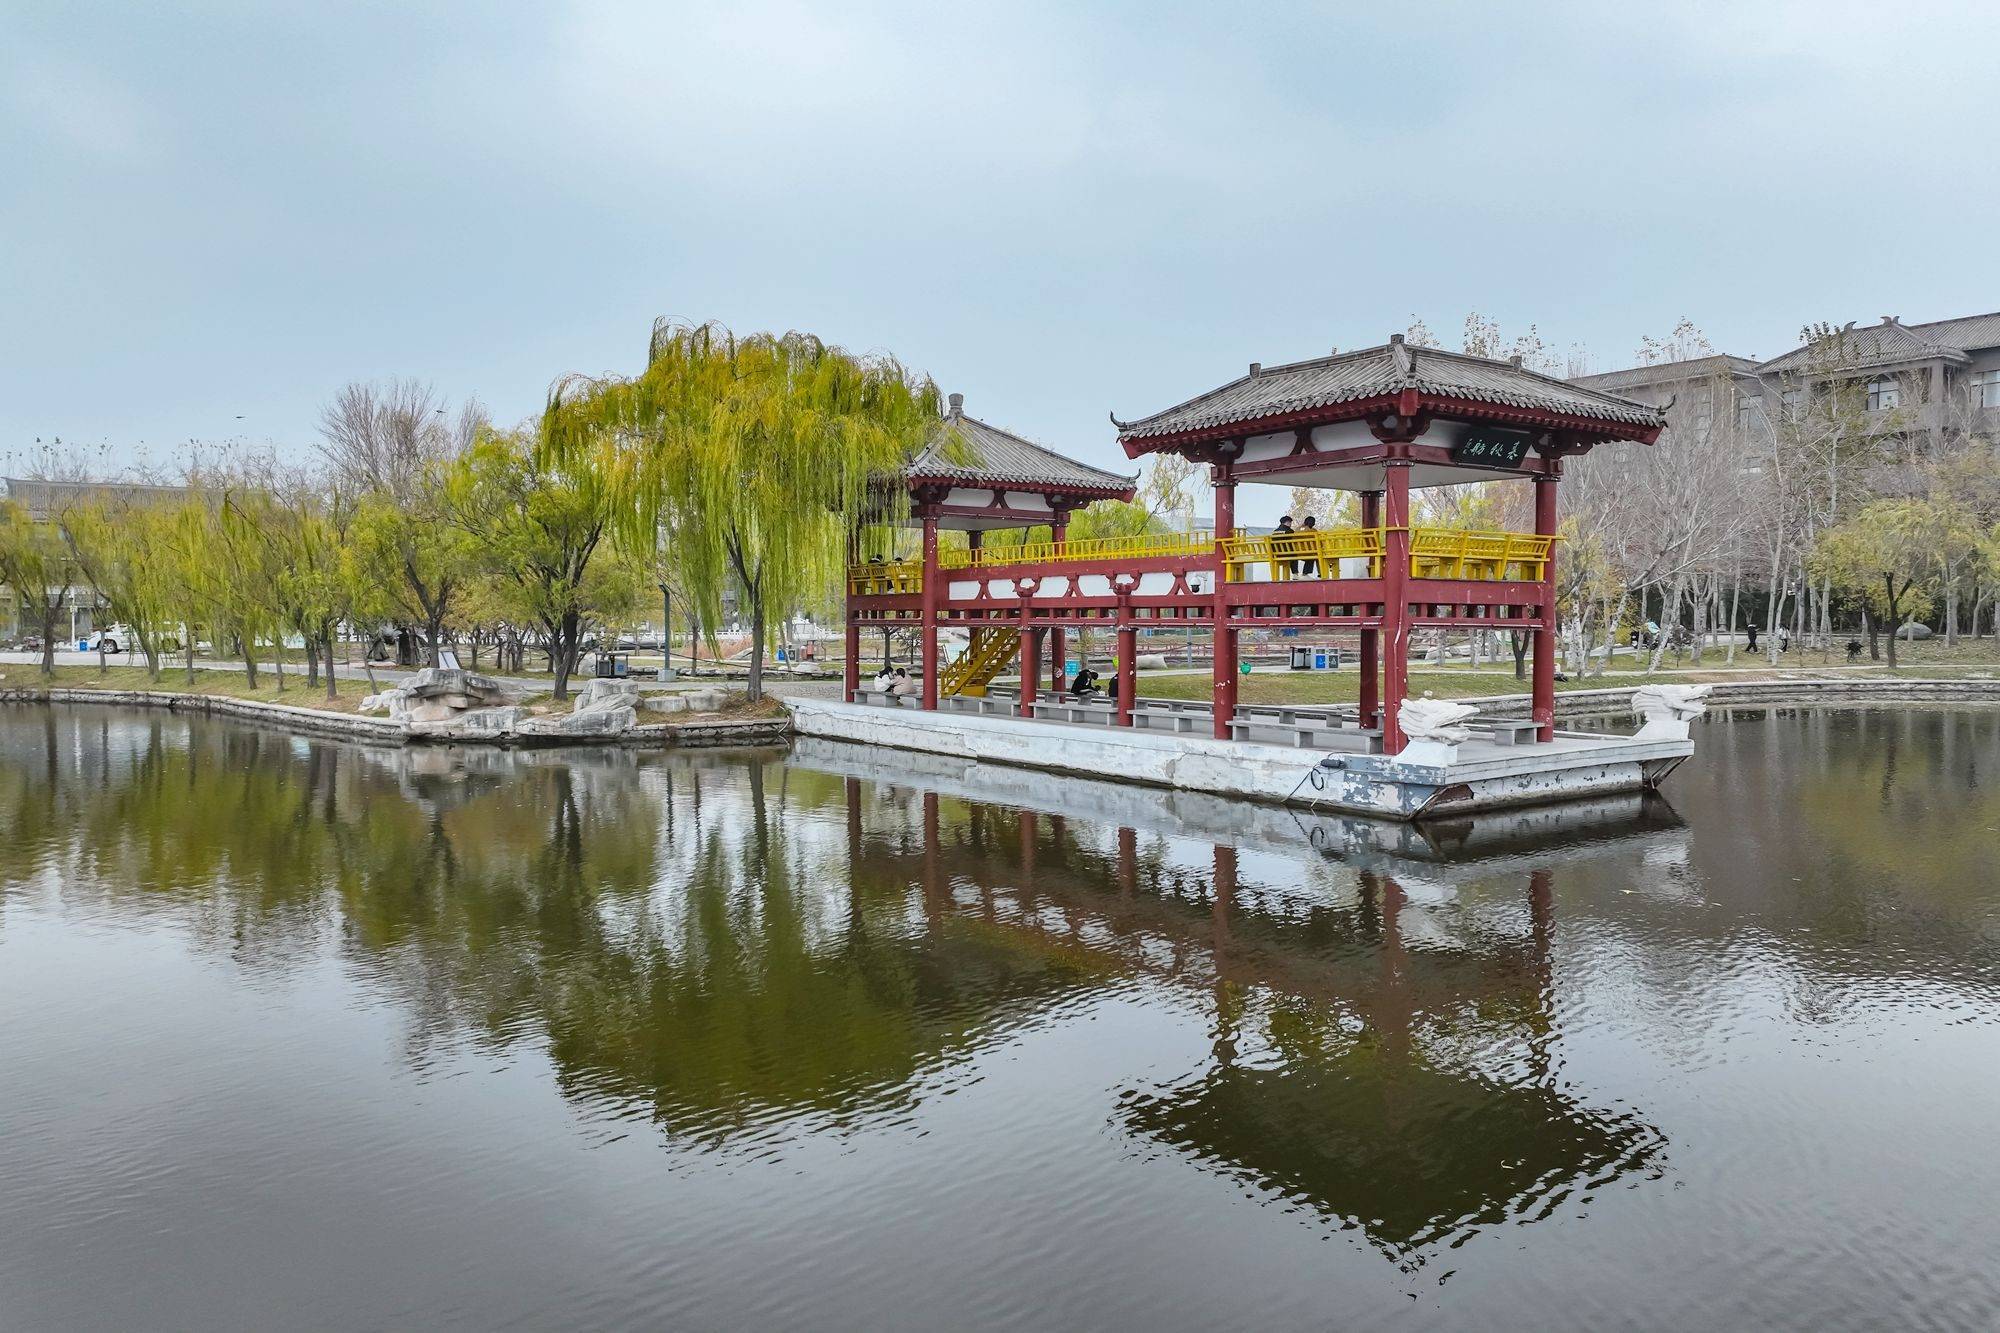 子园,历史文化气息浓郁,游客可以感受儒家文化的魅力